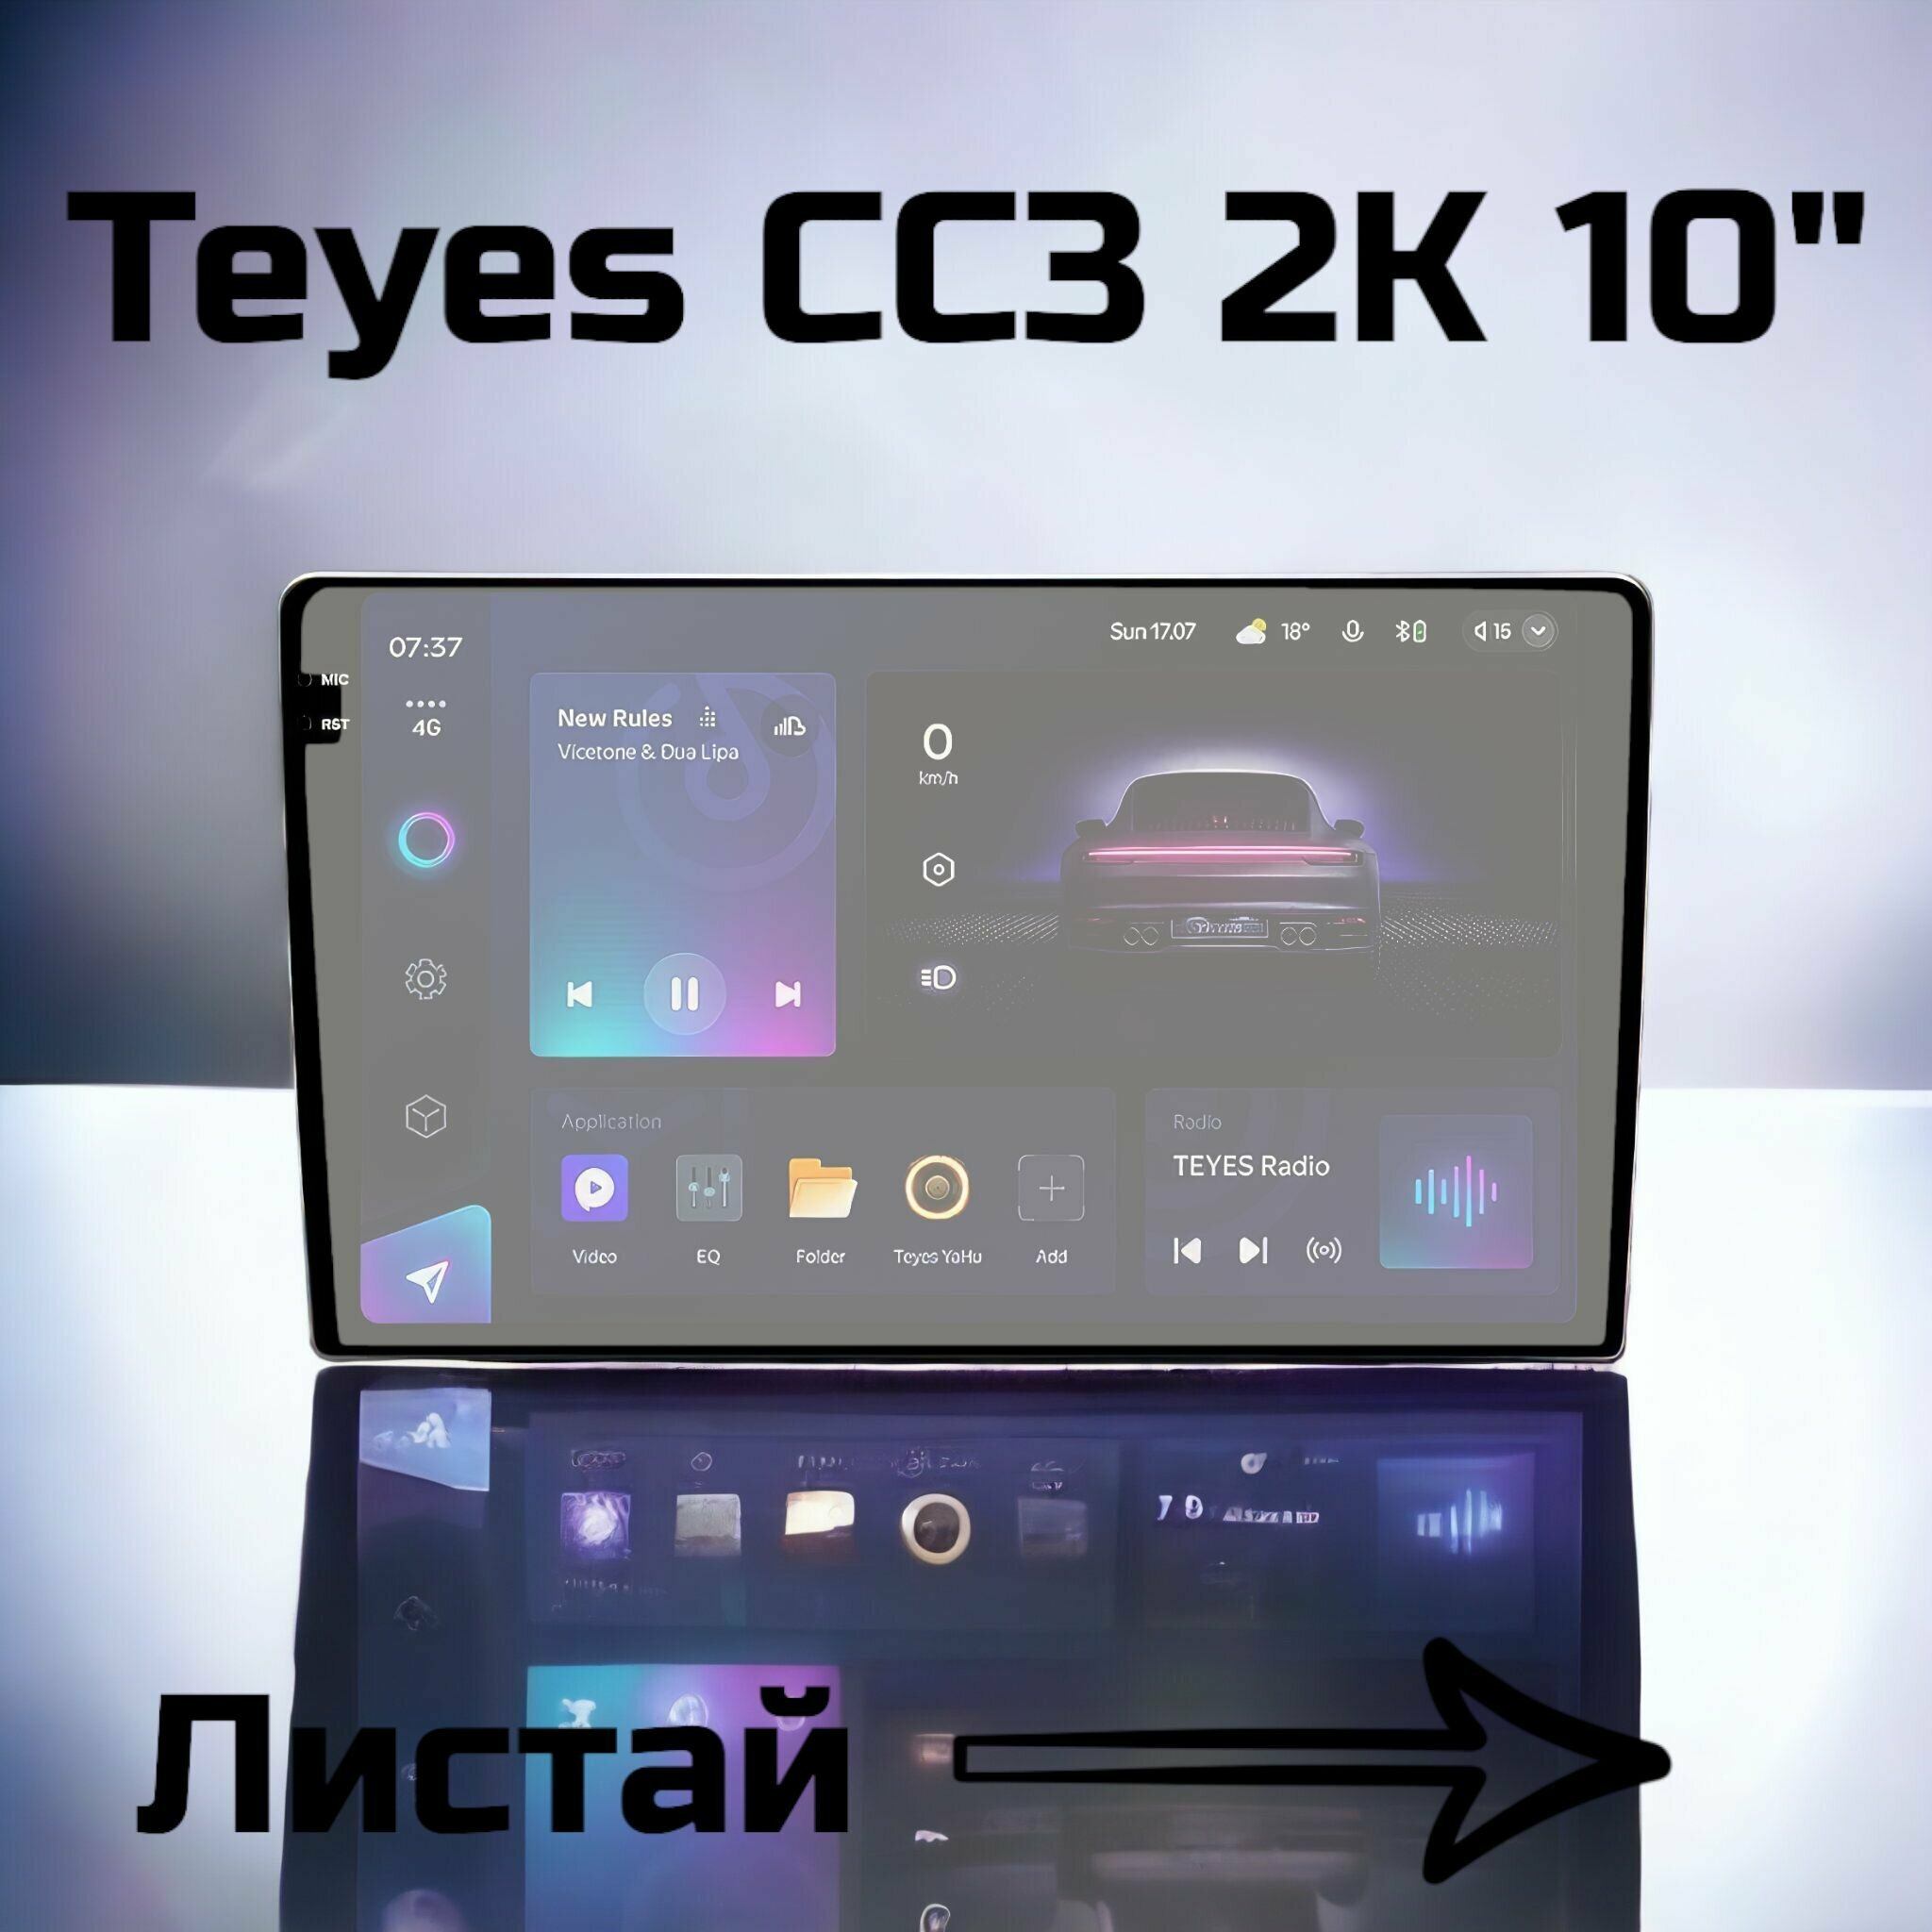 Глянцевая защитная гидрогелевая пленка на экран магнитолы Teyes CC3 2K 10'